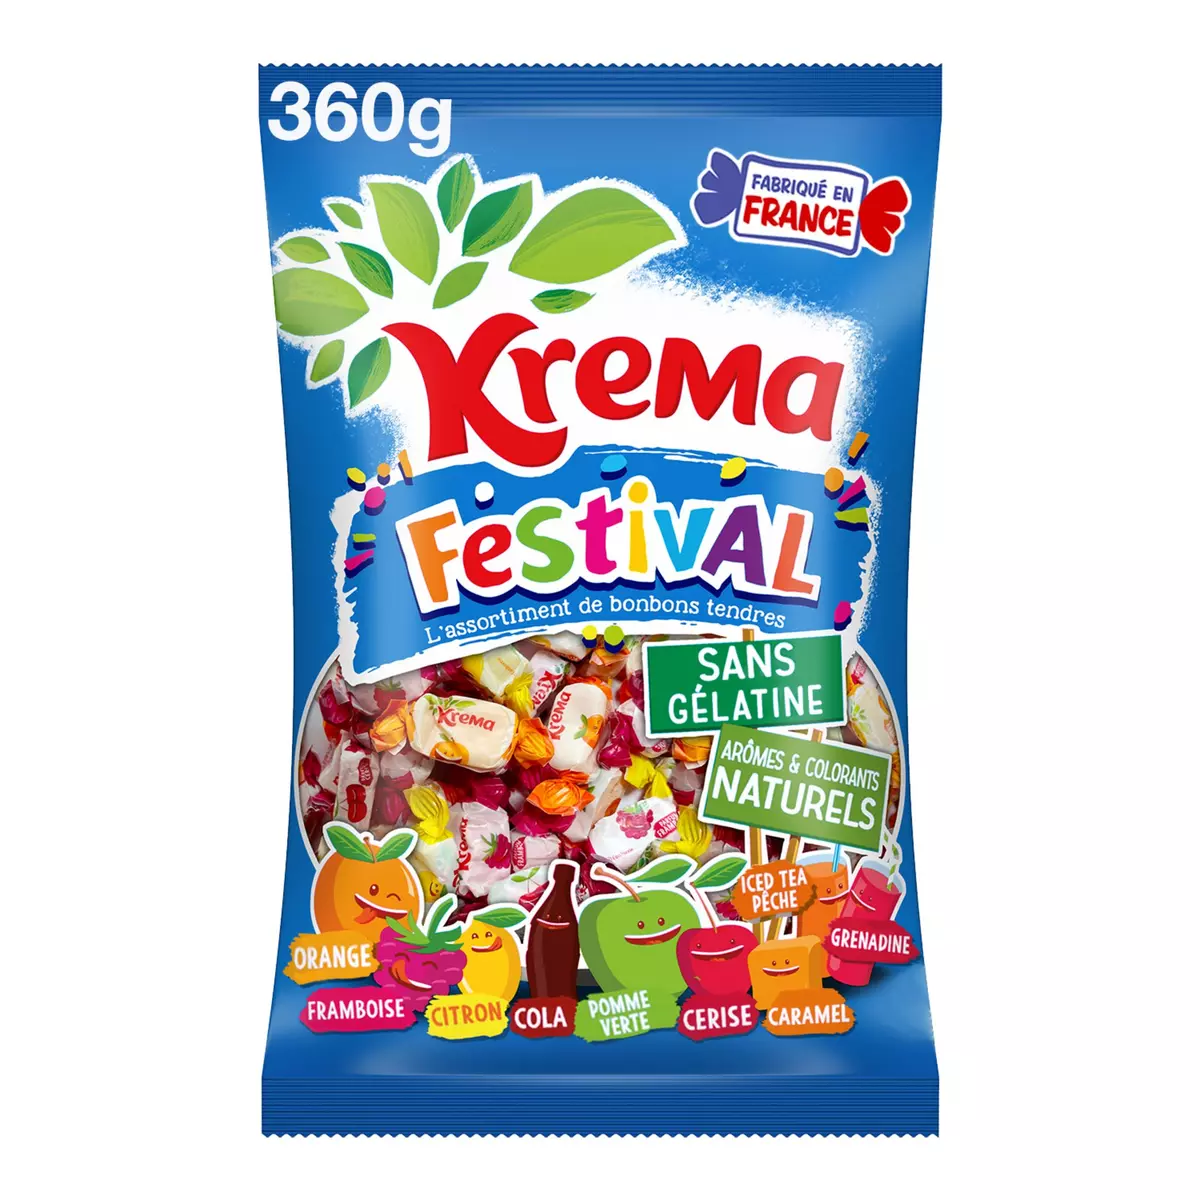 KREMA Festival assortiment de bonbons tendres 360g